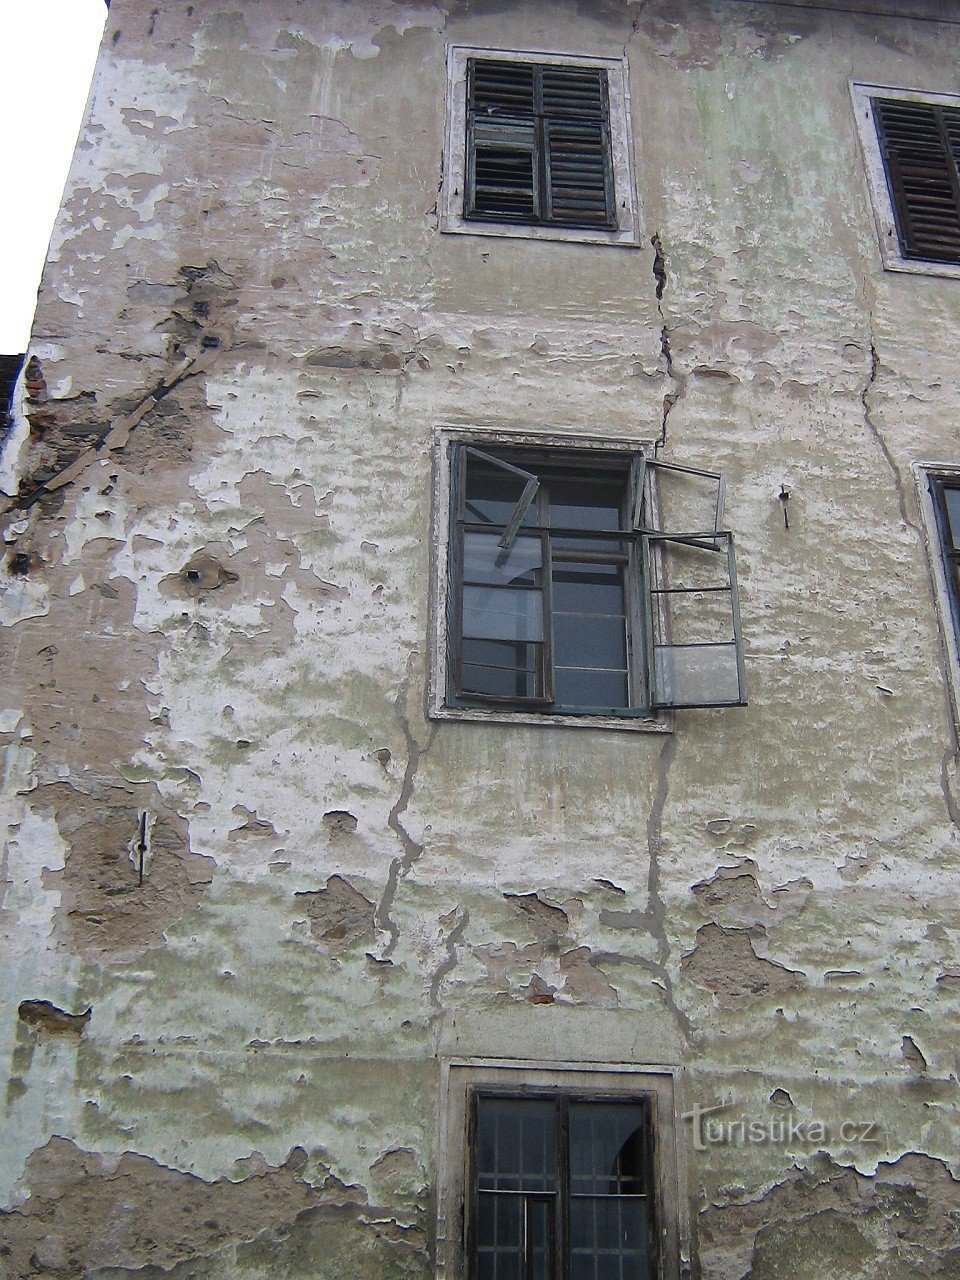 Komařice - castello - condizioni desolate